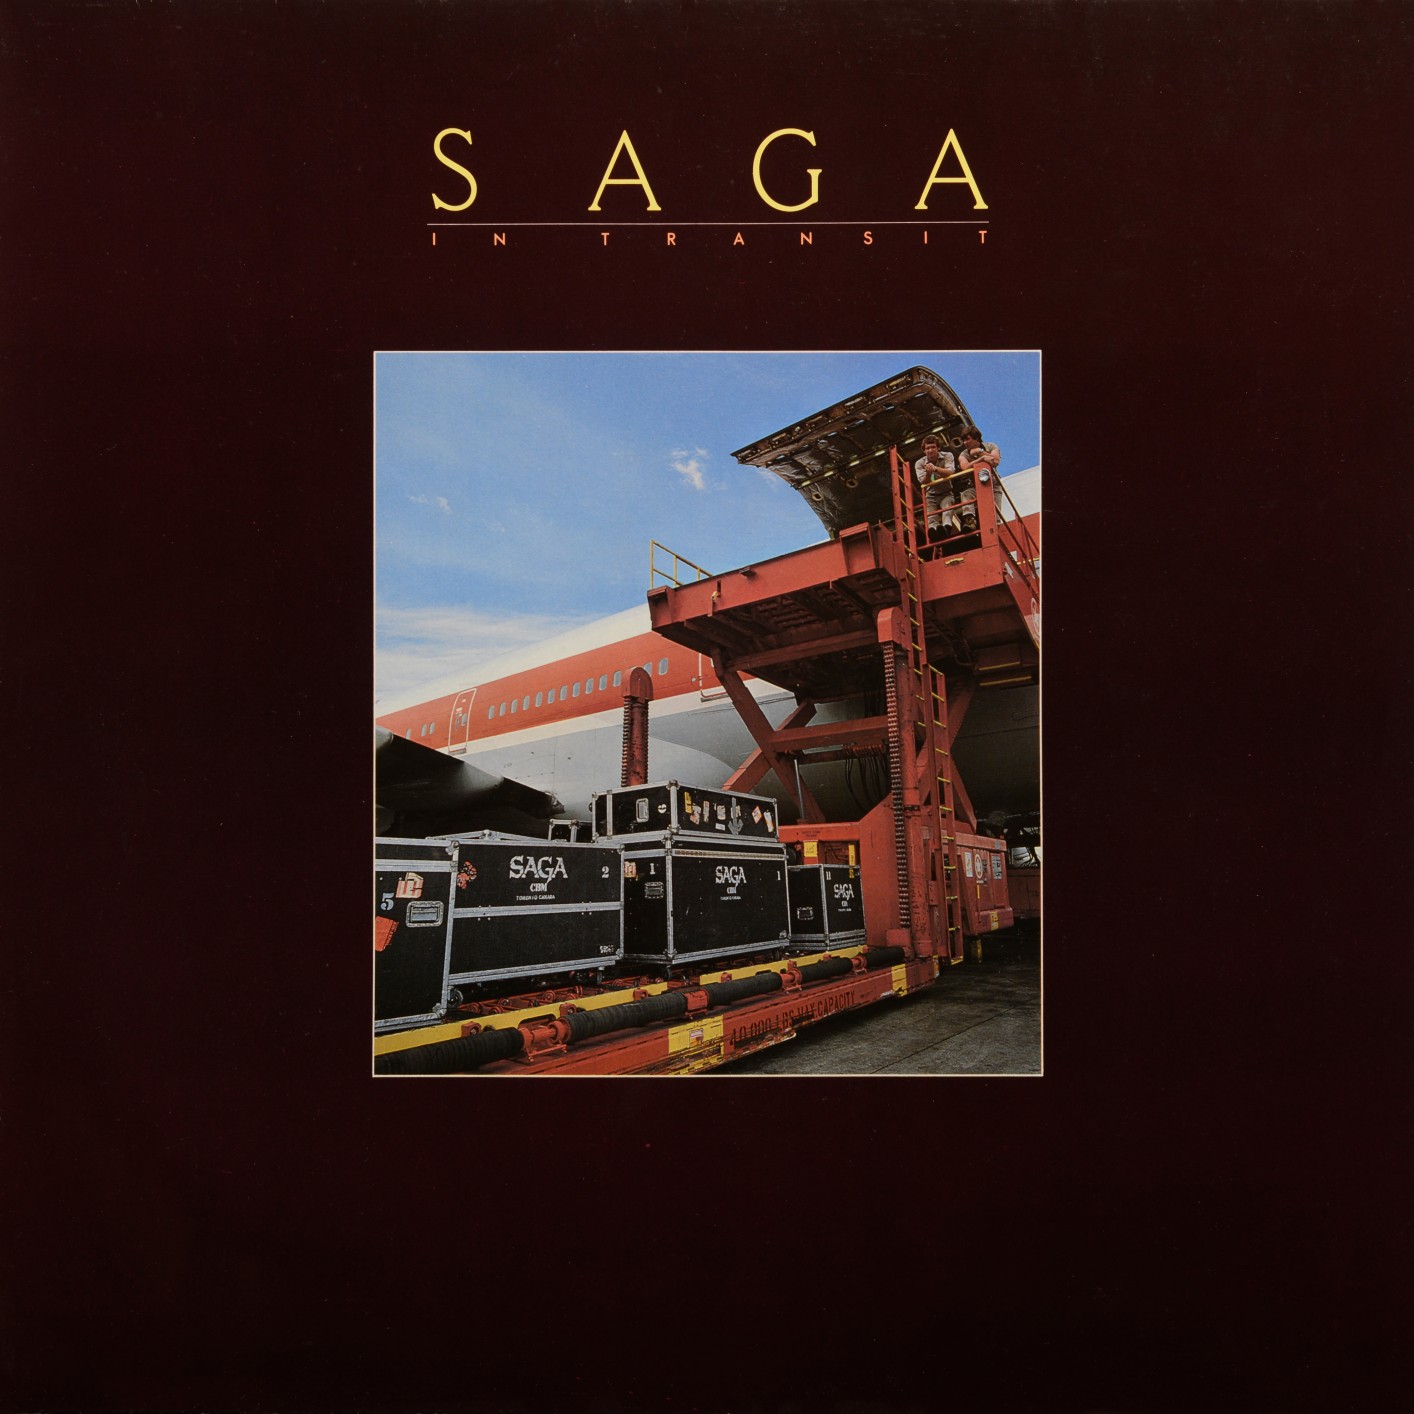 Saga – In Transit – Live (Remastered 2021) (1982/2021) [Official Digital Download 24bit/48kHz]